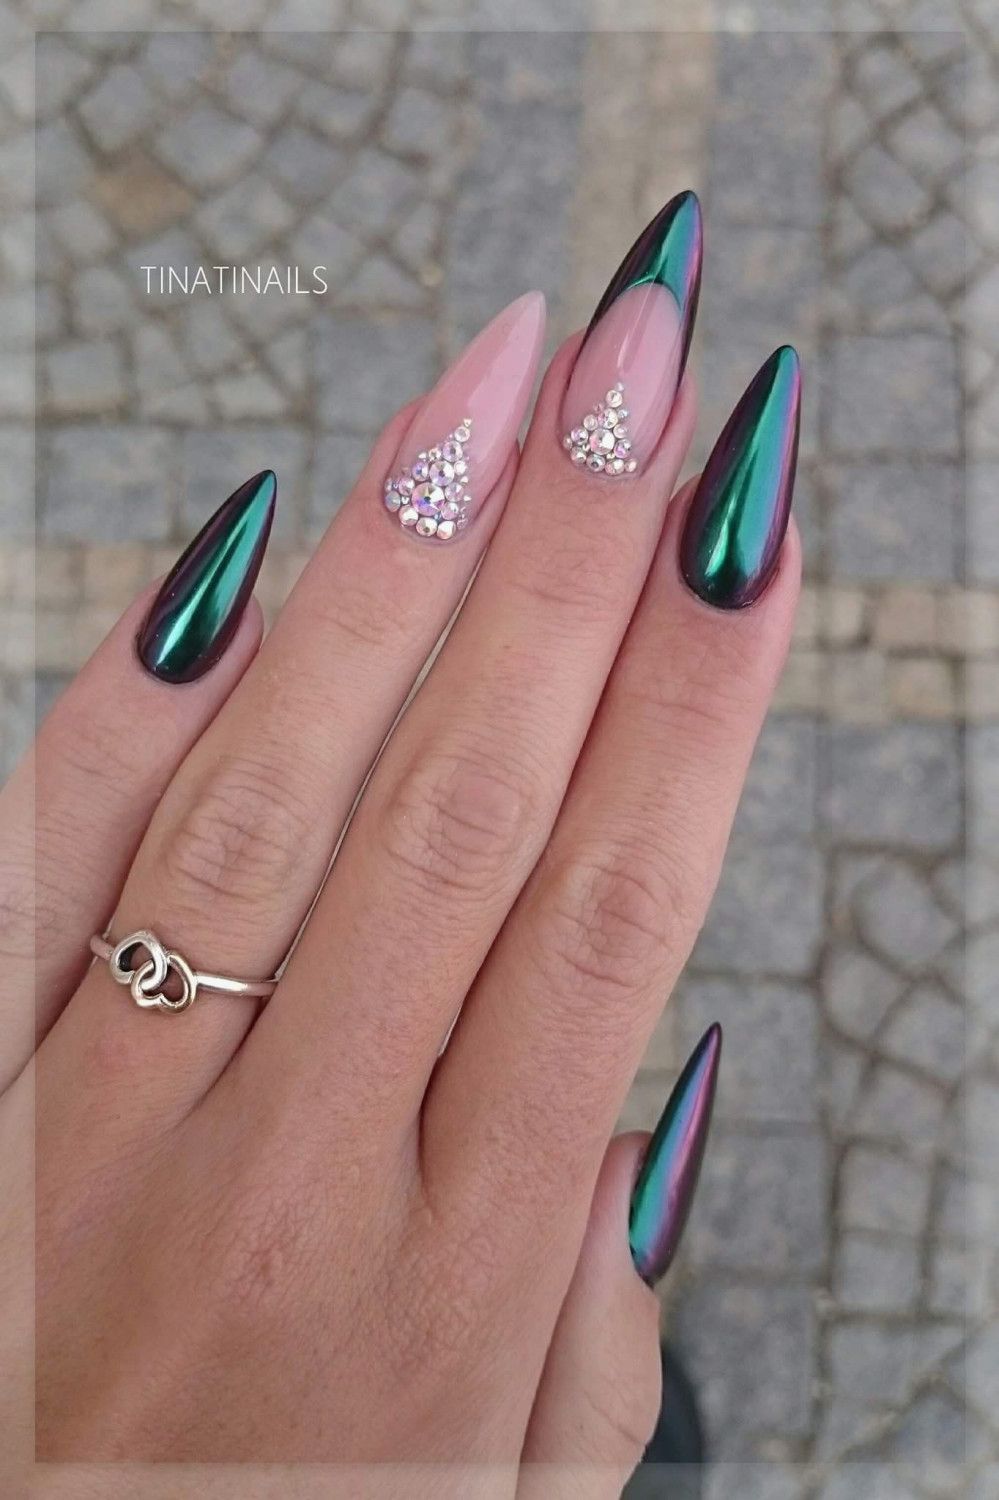 24 Pink Nails With Rhinestones In 2020 Zlate Nehty Nehty Stiletto Design Nehtu